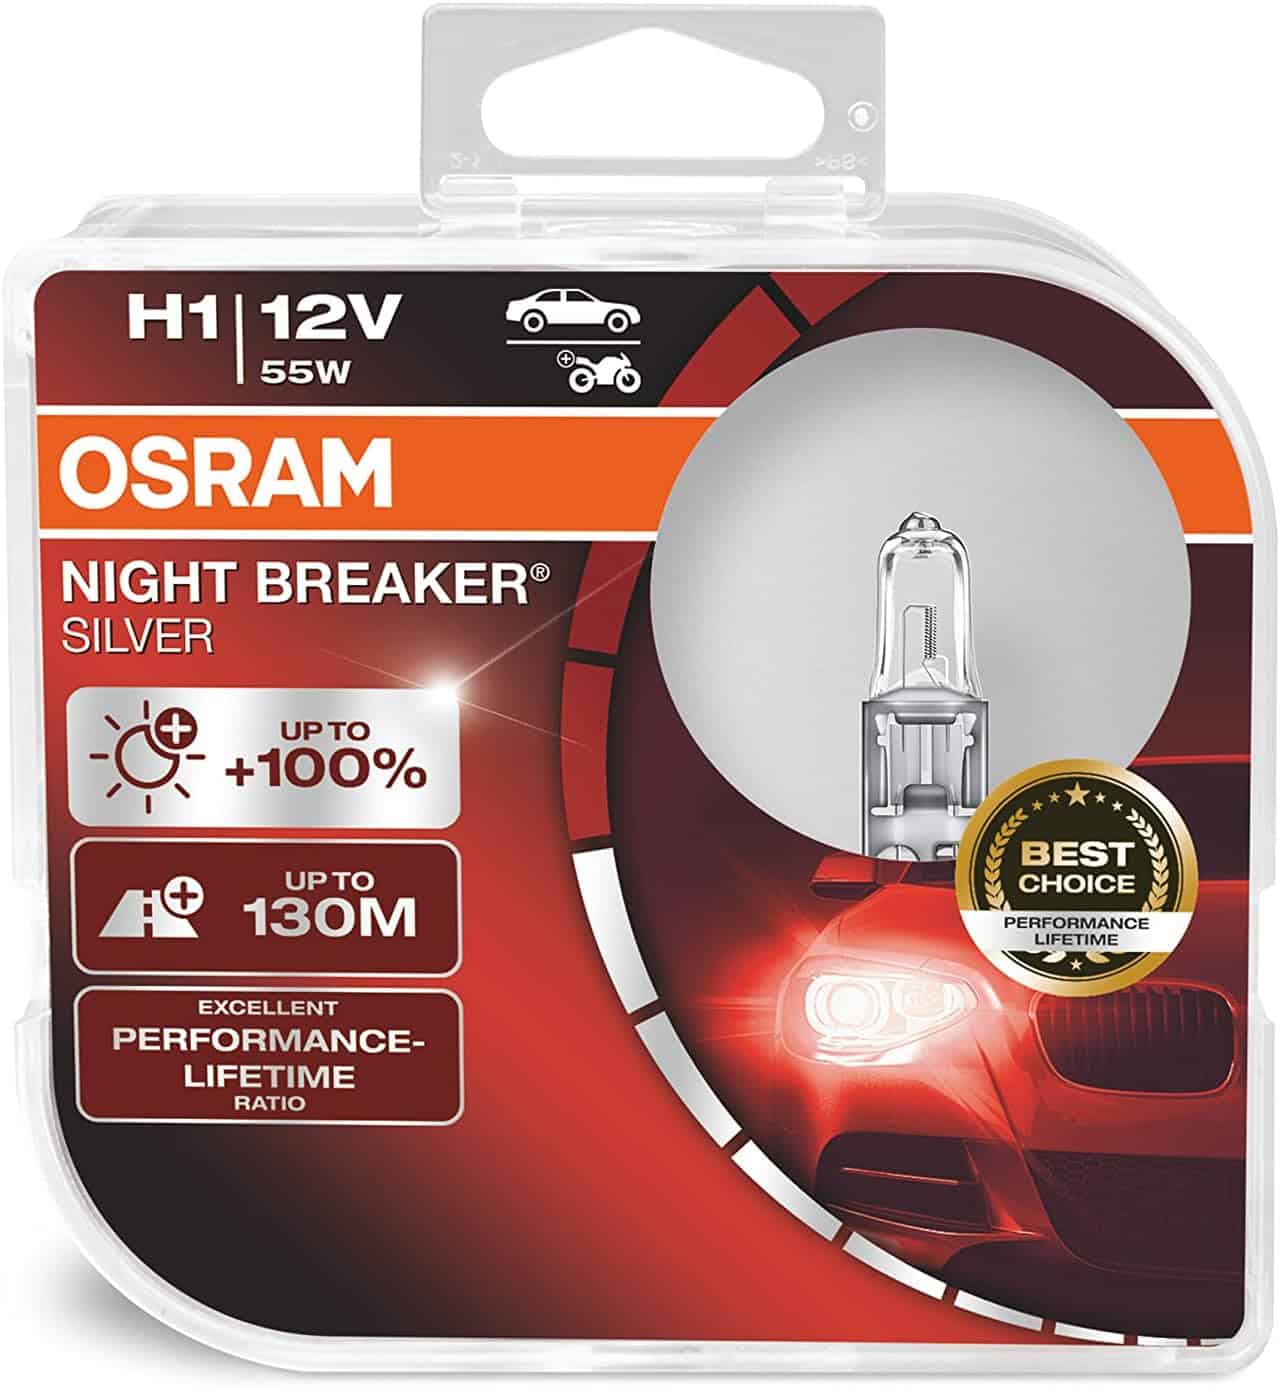 OSRAM NIGHT BREAKER SILVER H1, +100% more brightness, halogen headlamp-2252